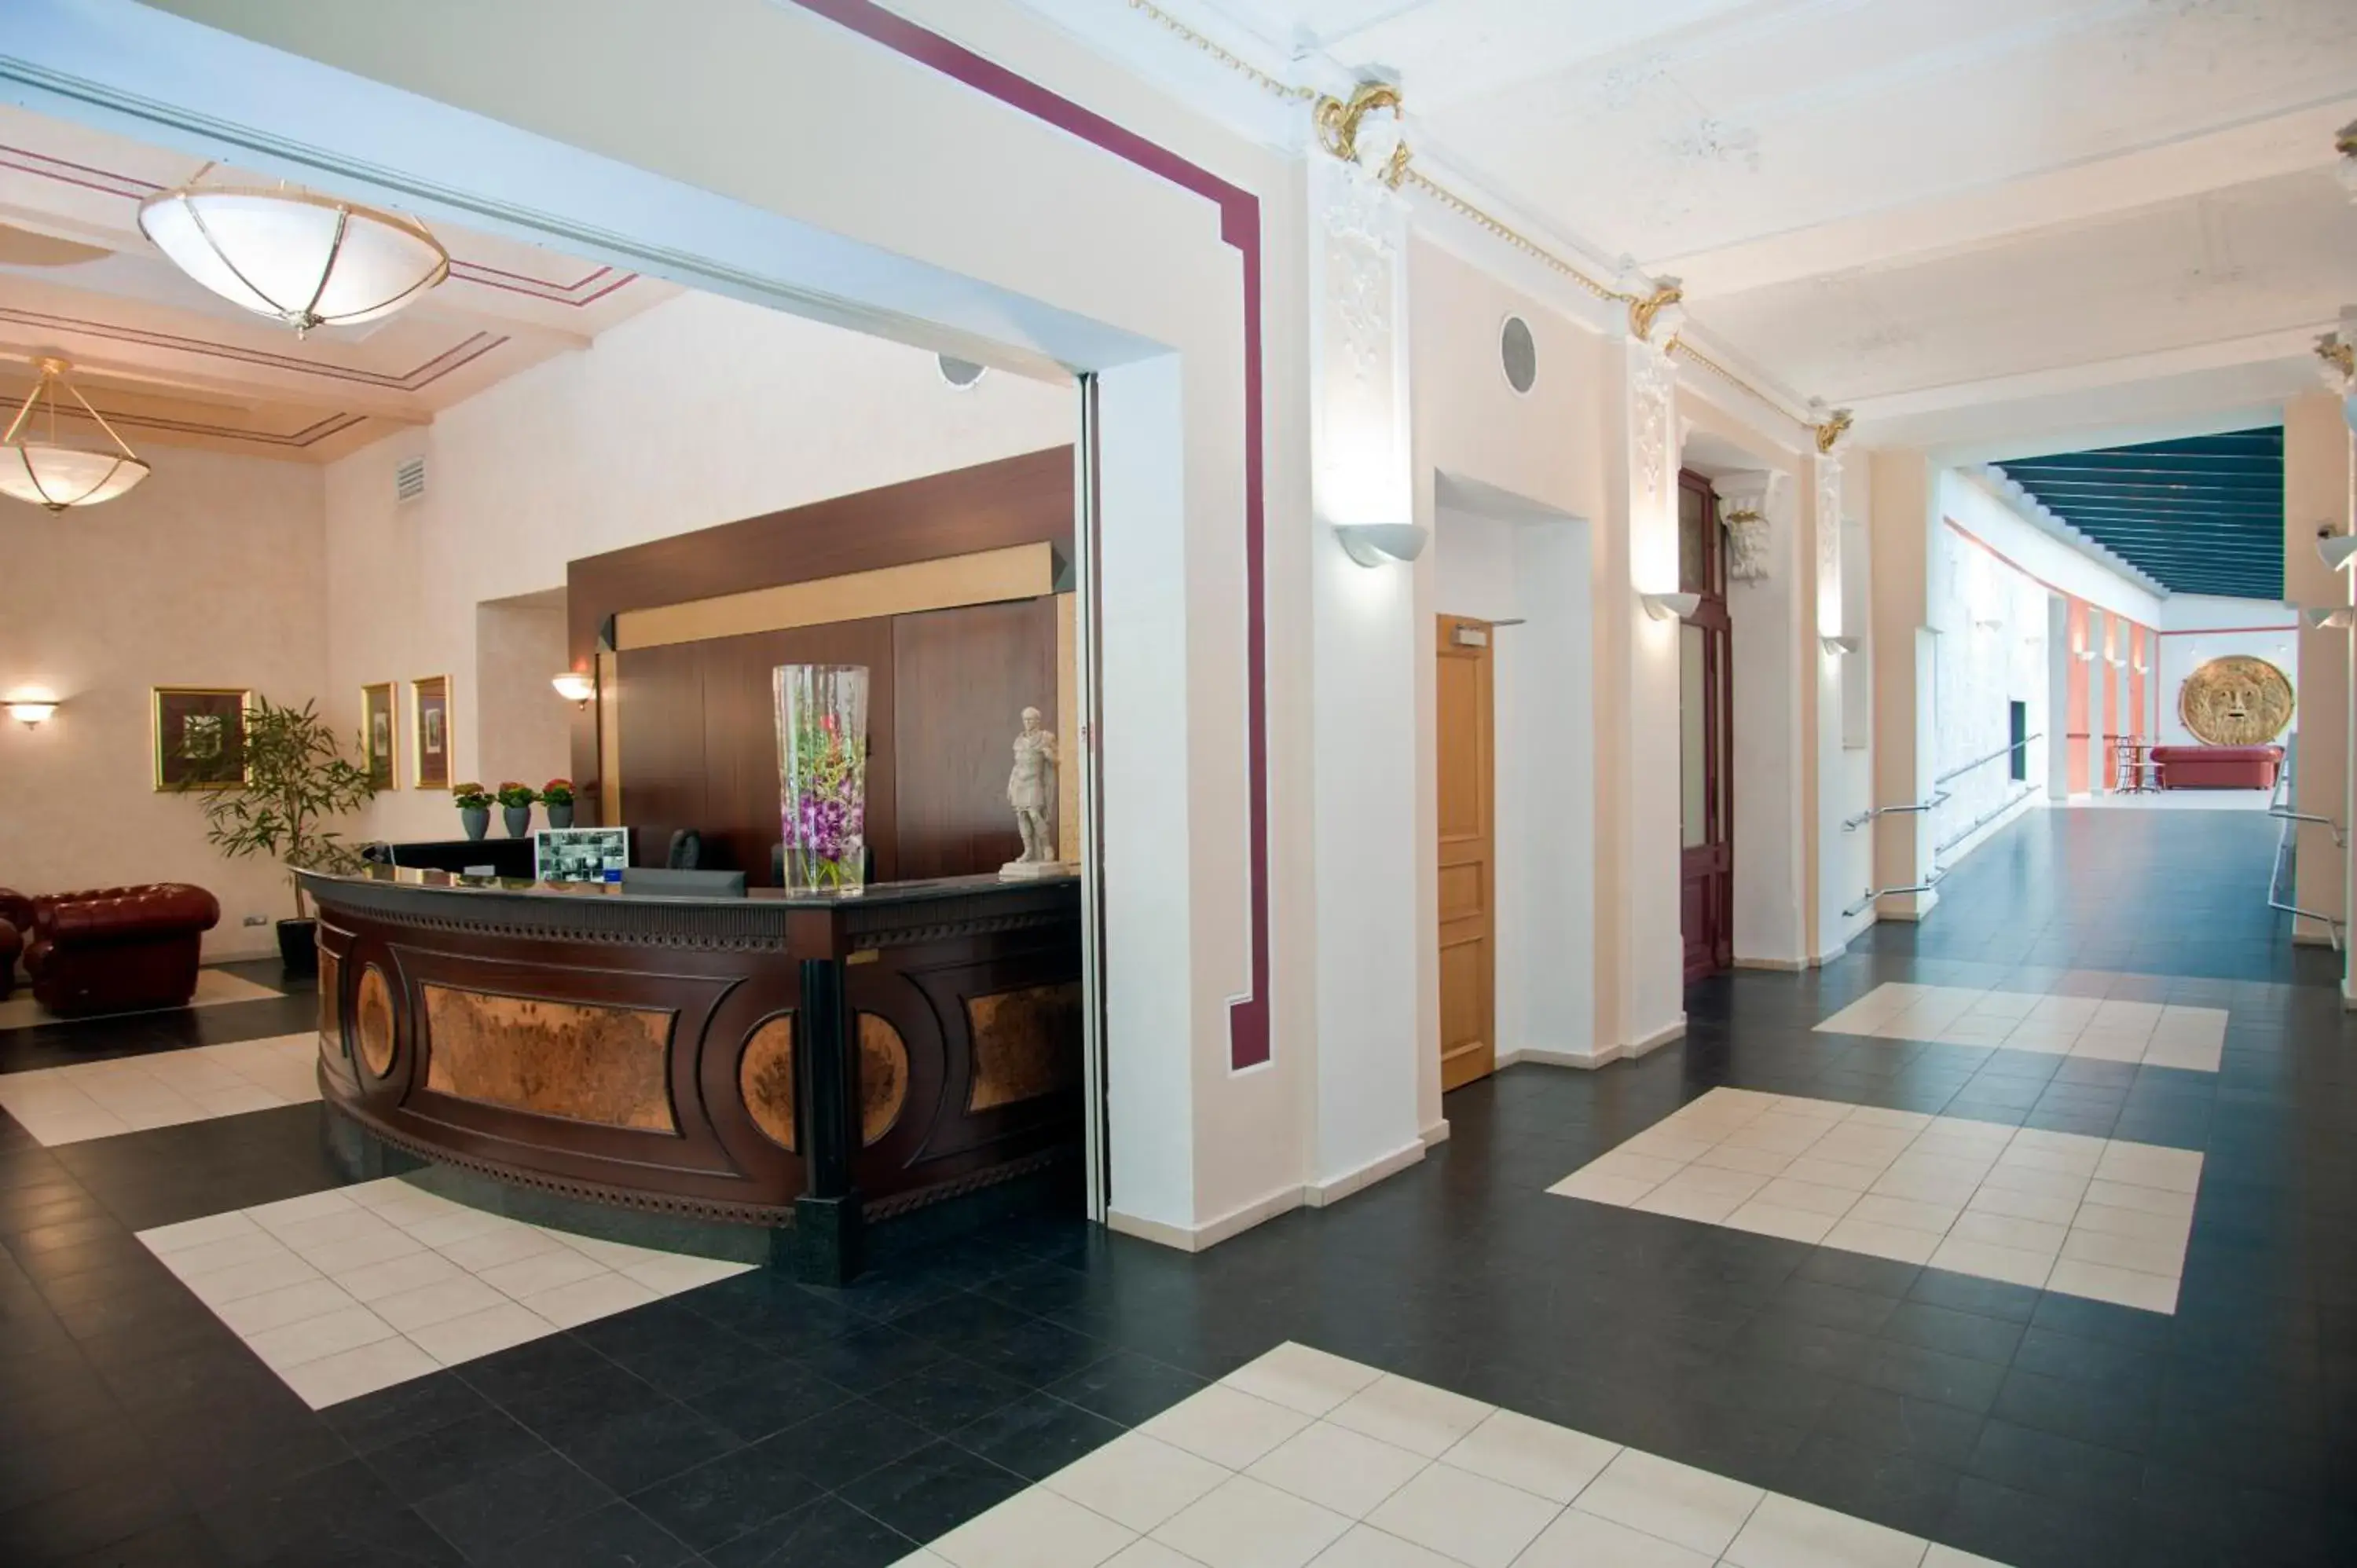 Lobby or reception, Lobby/Reception in Hotel Caesar Prague